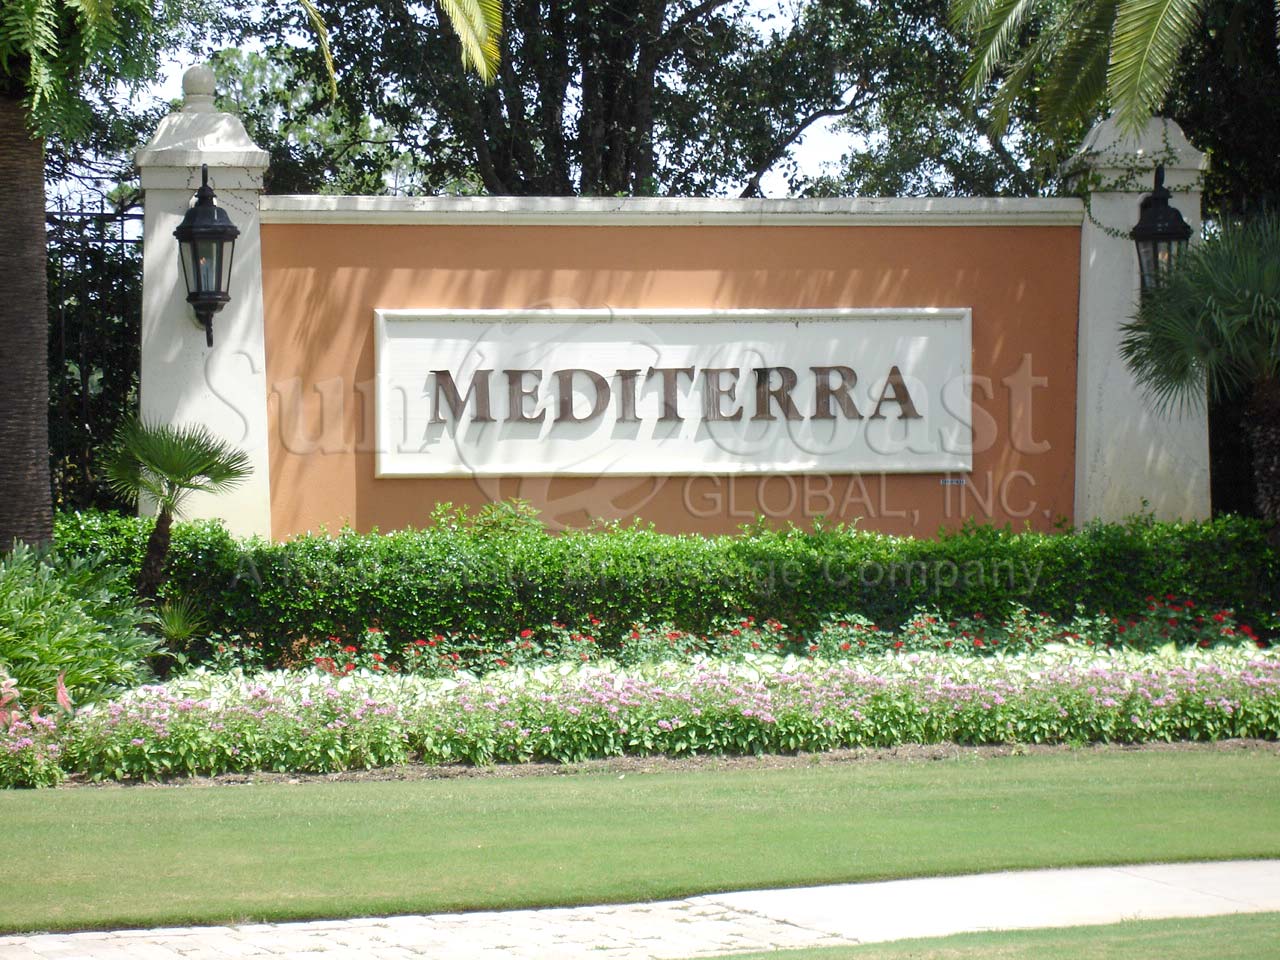 MEDITERRA sign